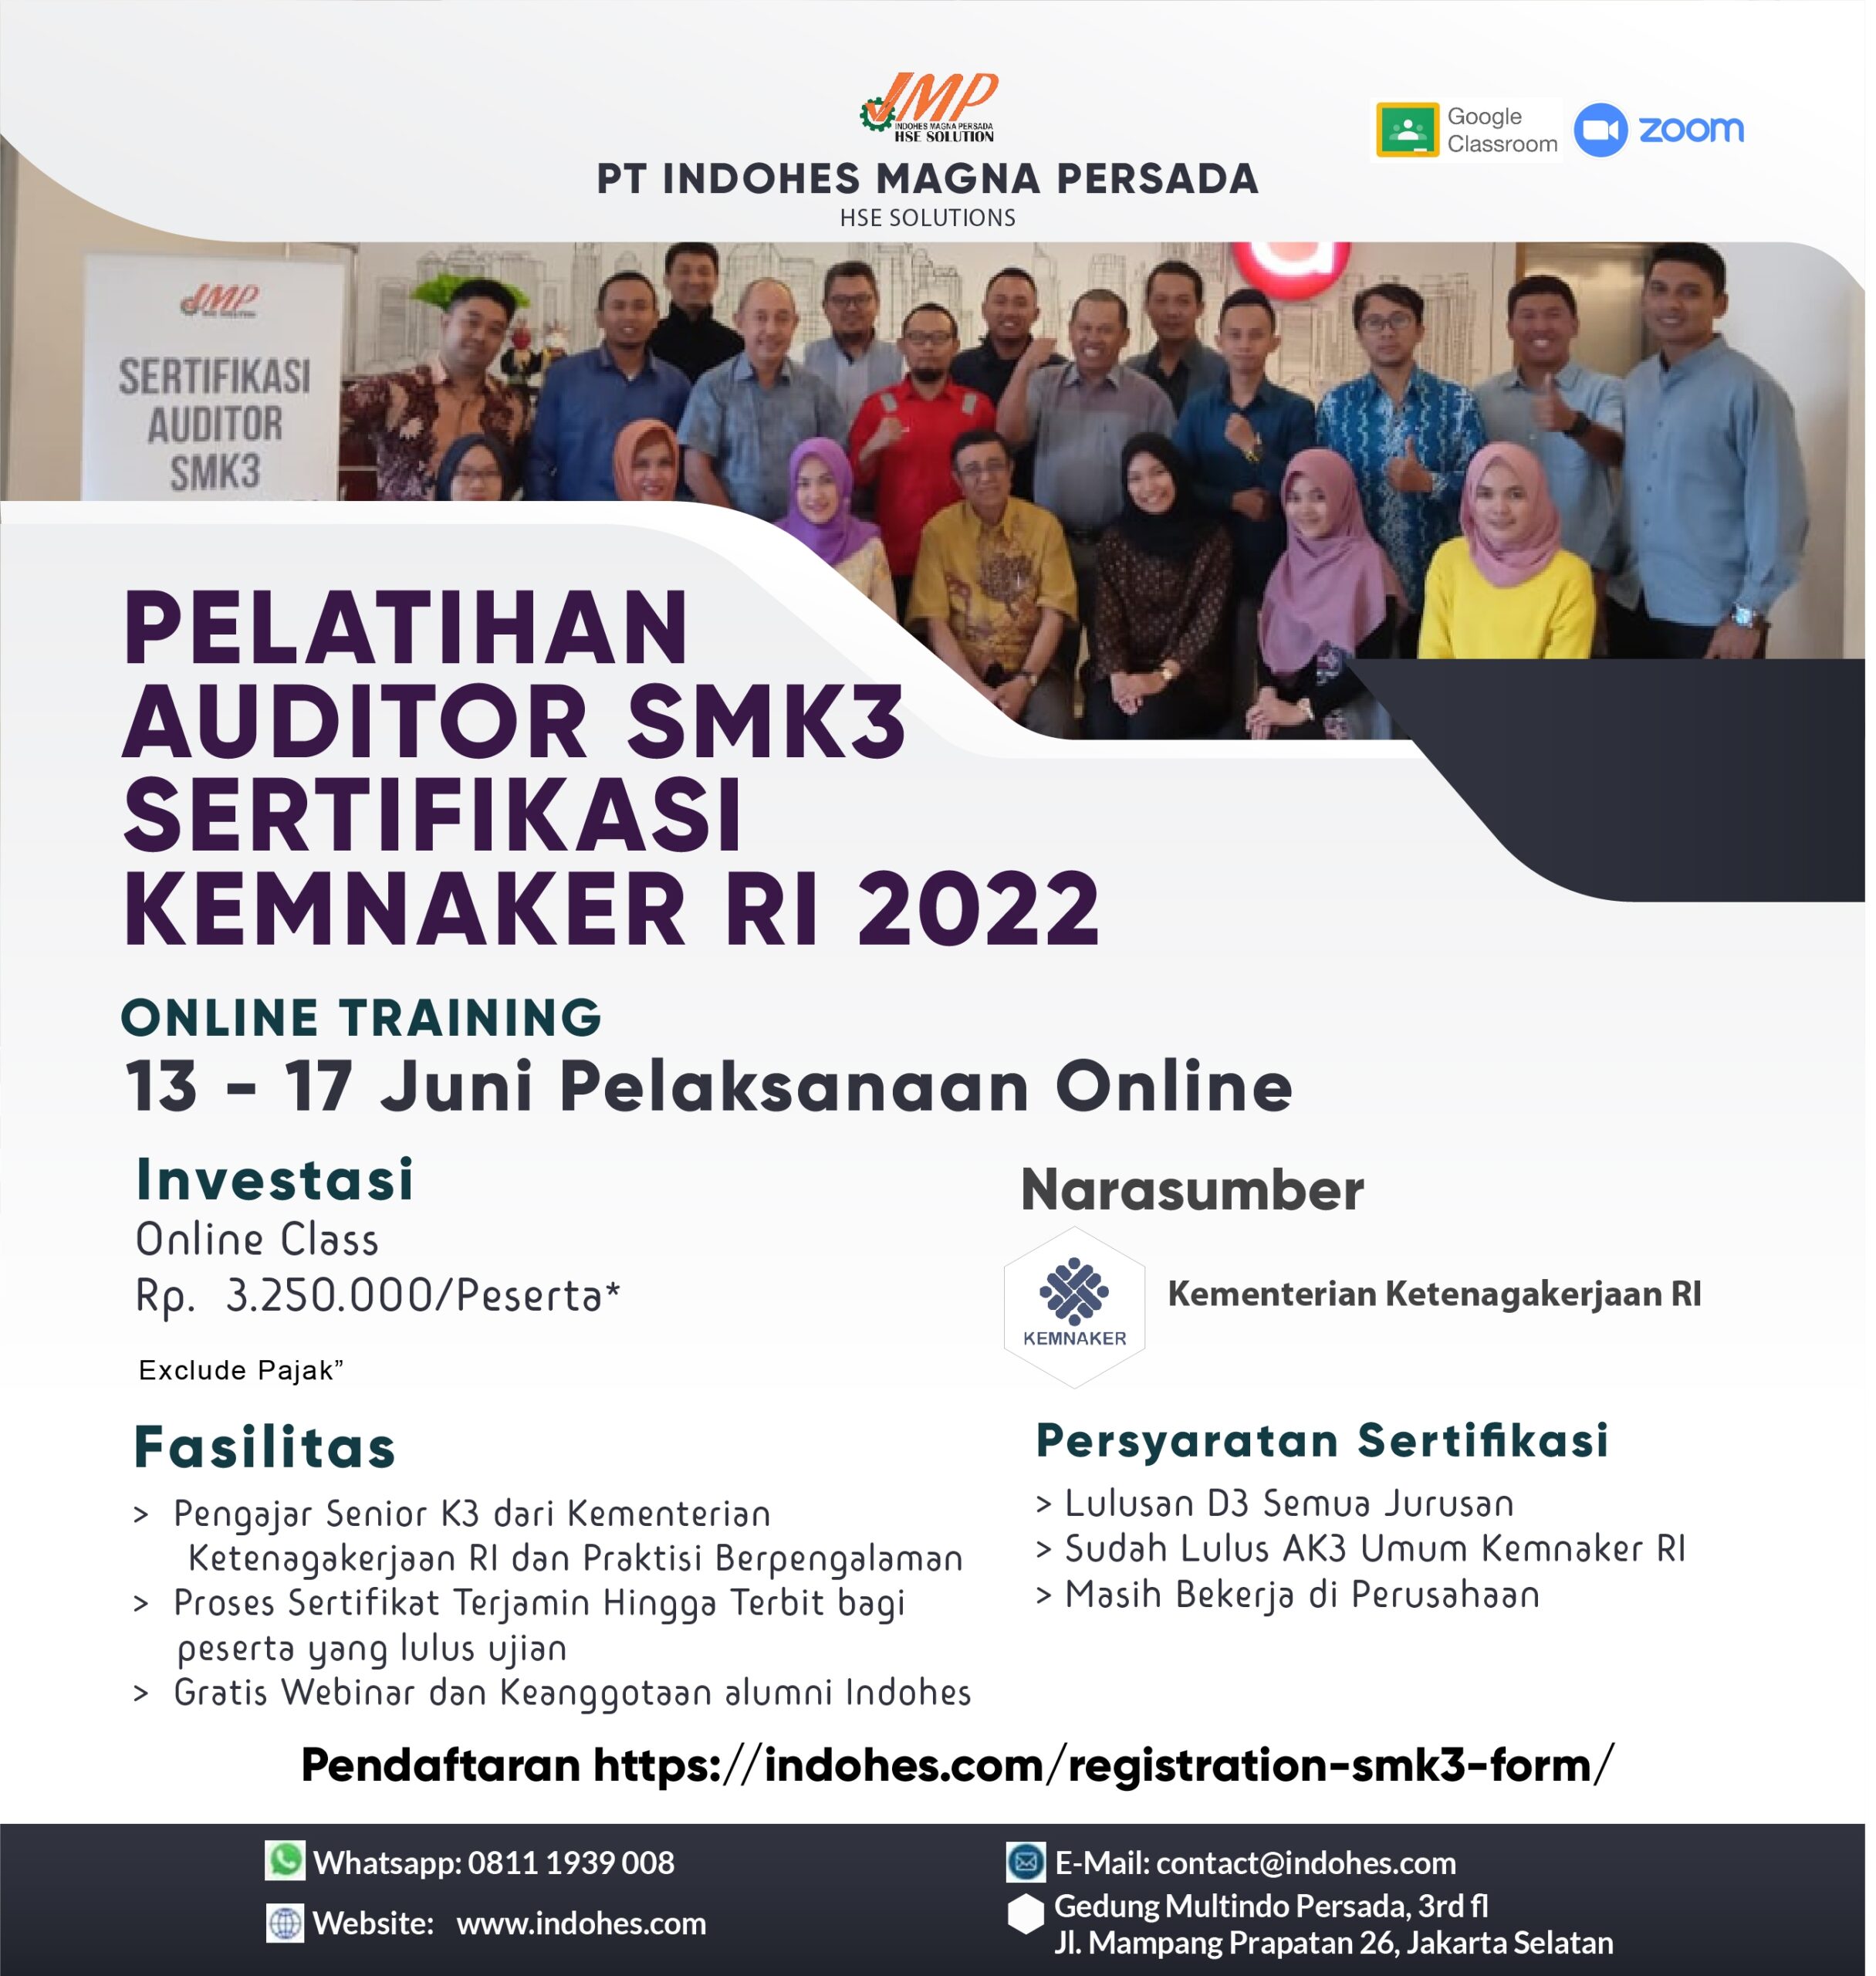 Auditor SMK3 Sertifikasi Kemnaker RI 2022 13 - 17 Juni 2022